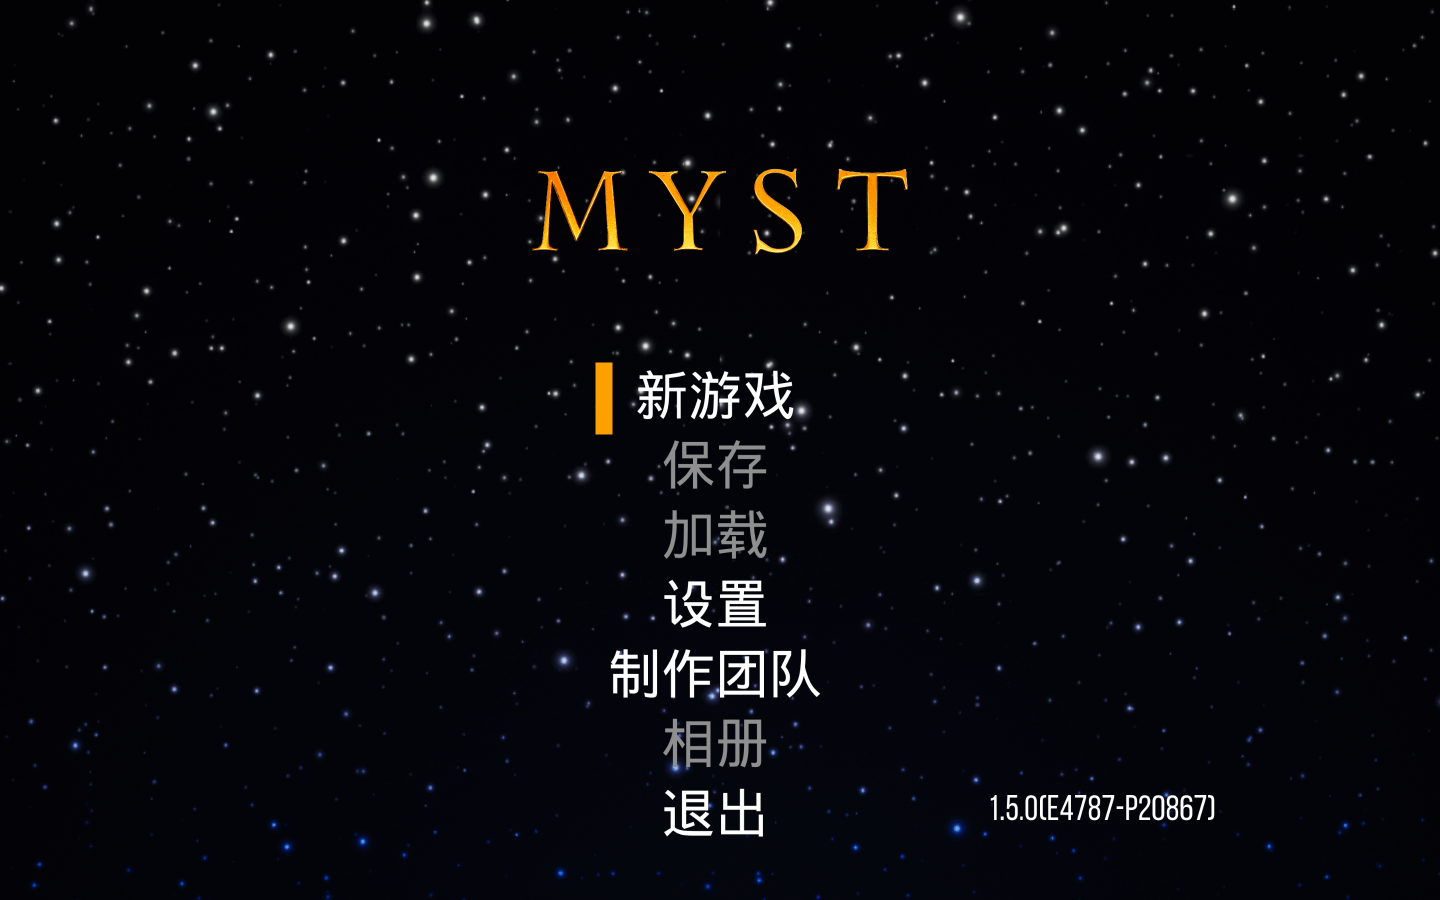 Mac游戏推荐 神秘岛重置版 Myst for Mac 冒险解谜游戏 苹果电脑